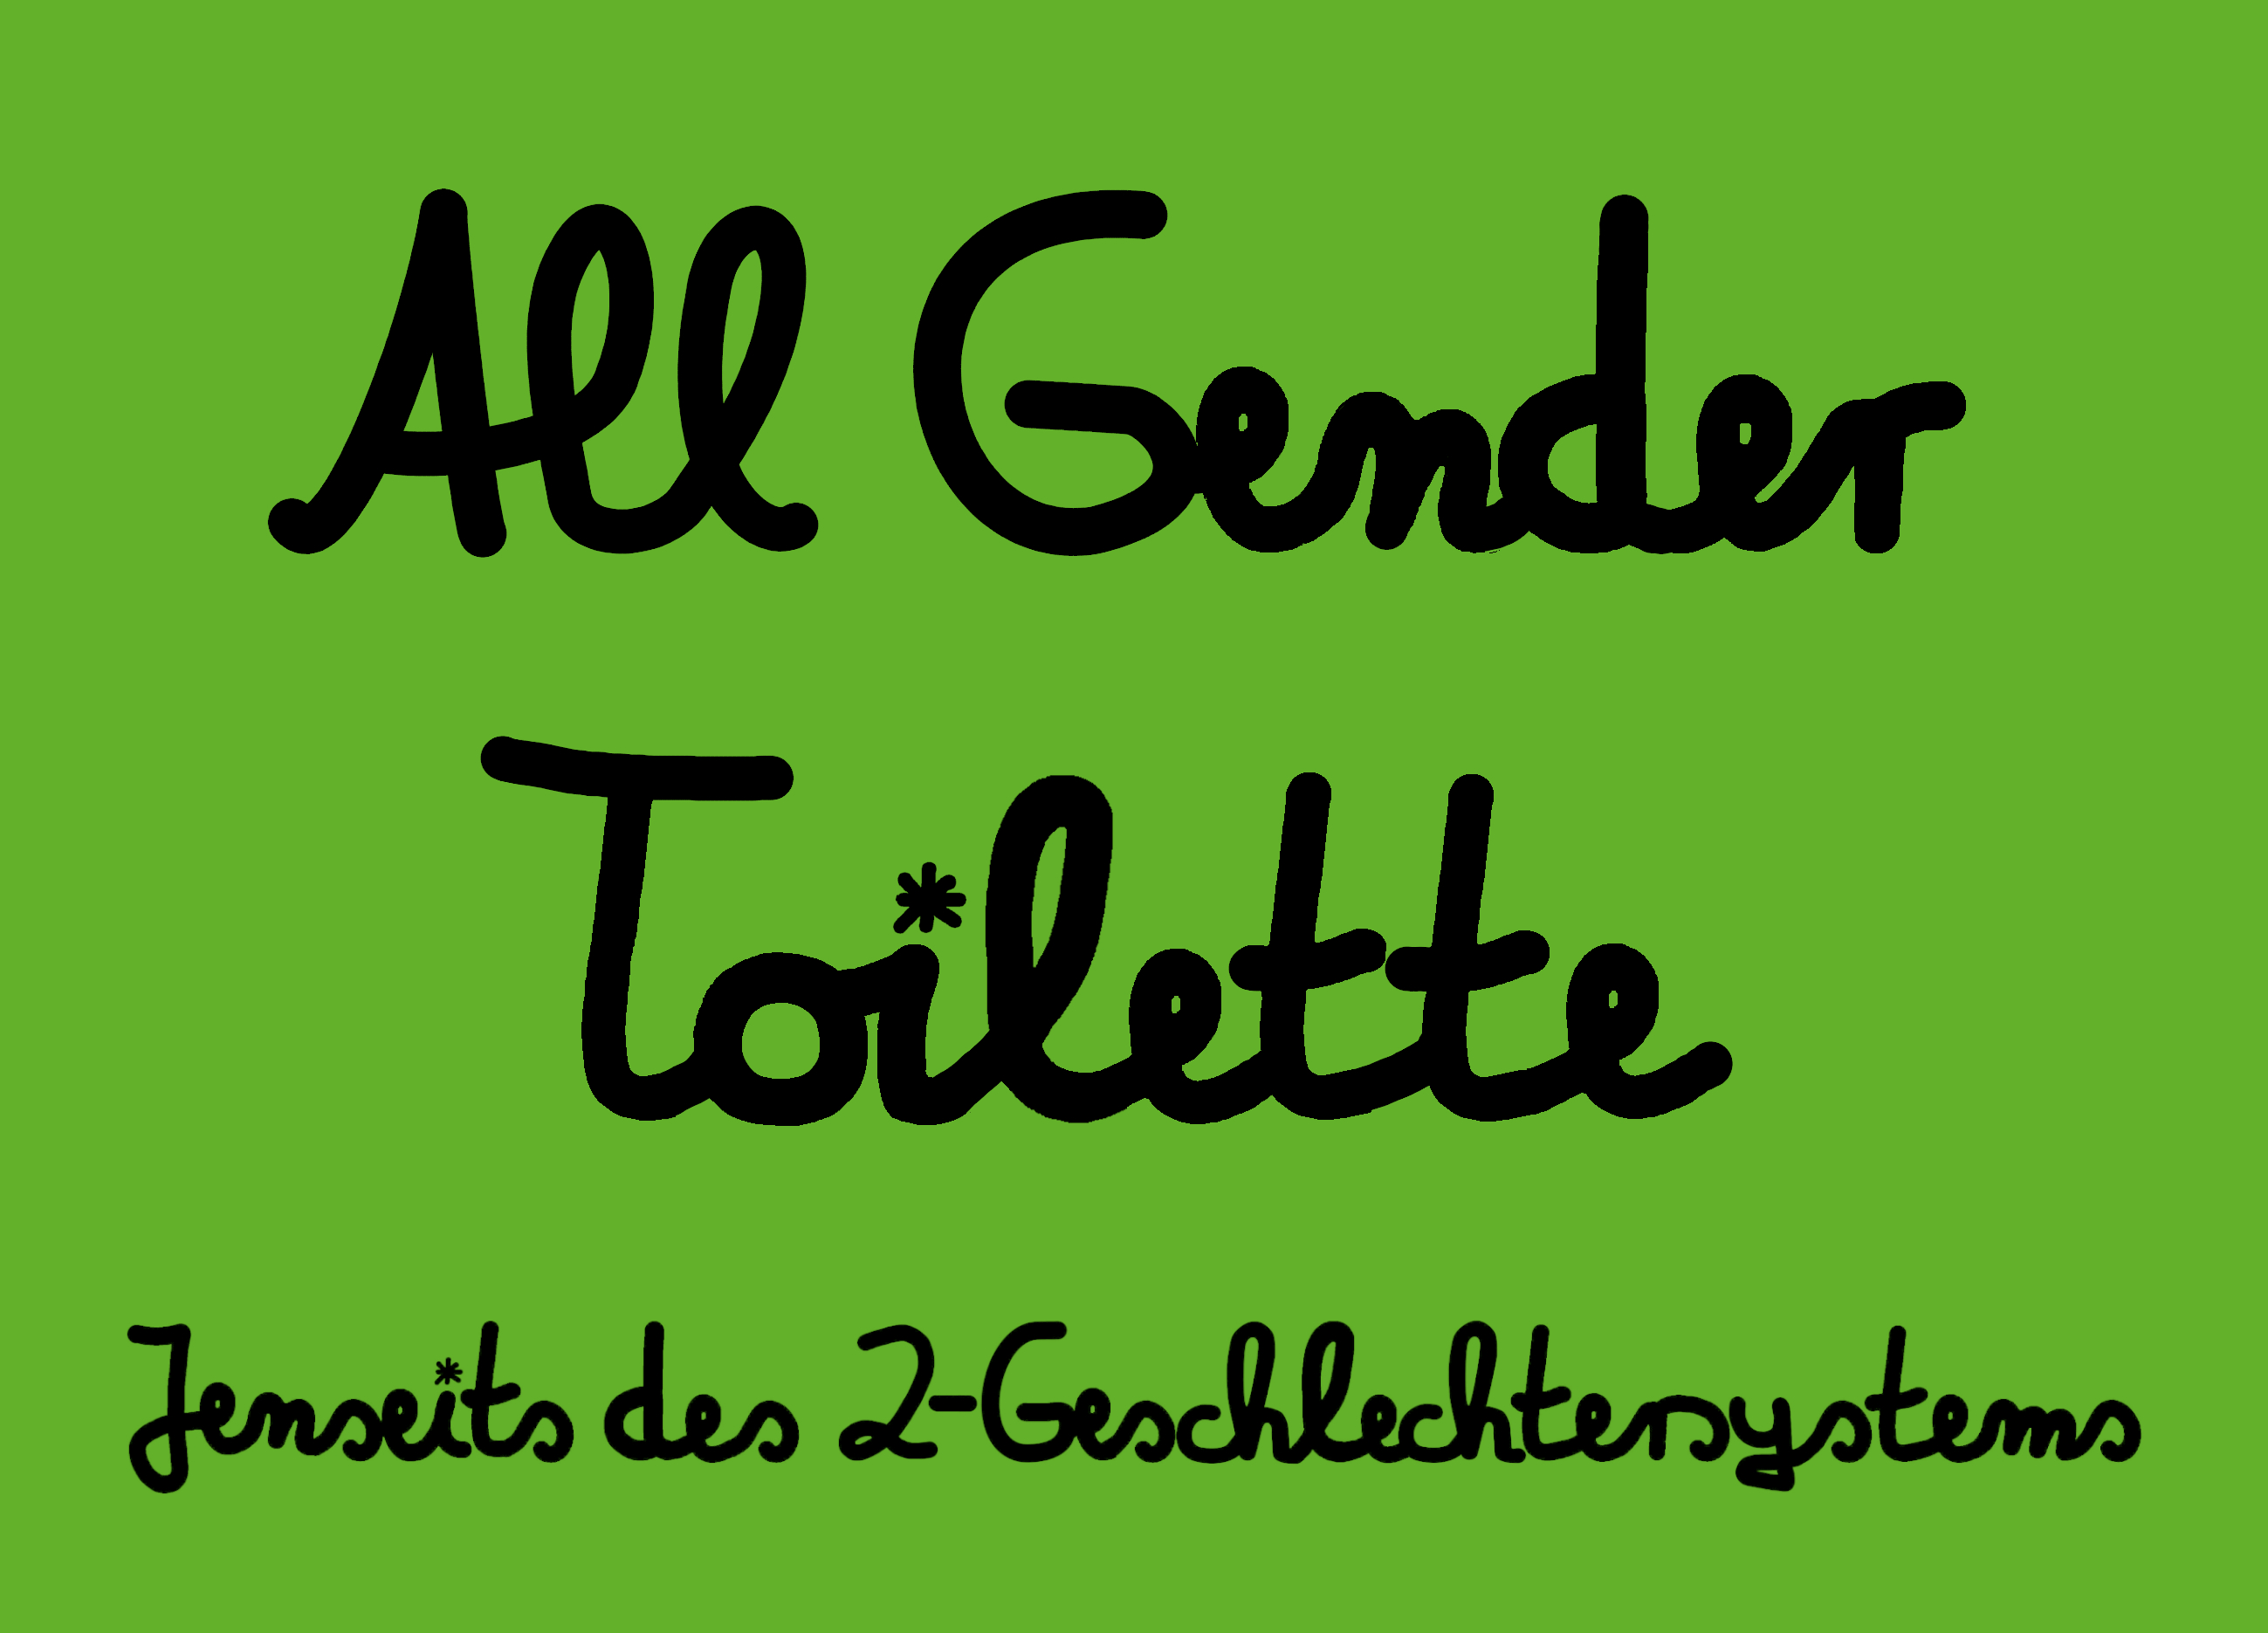 All-Gender Toilette